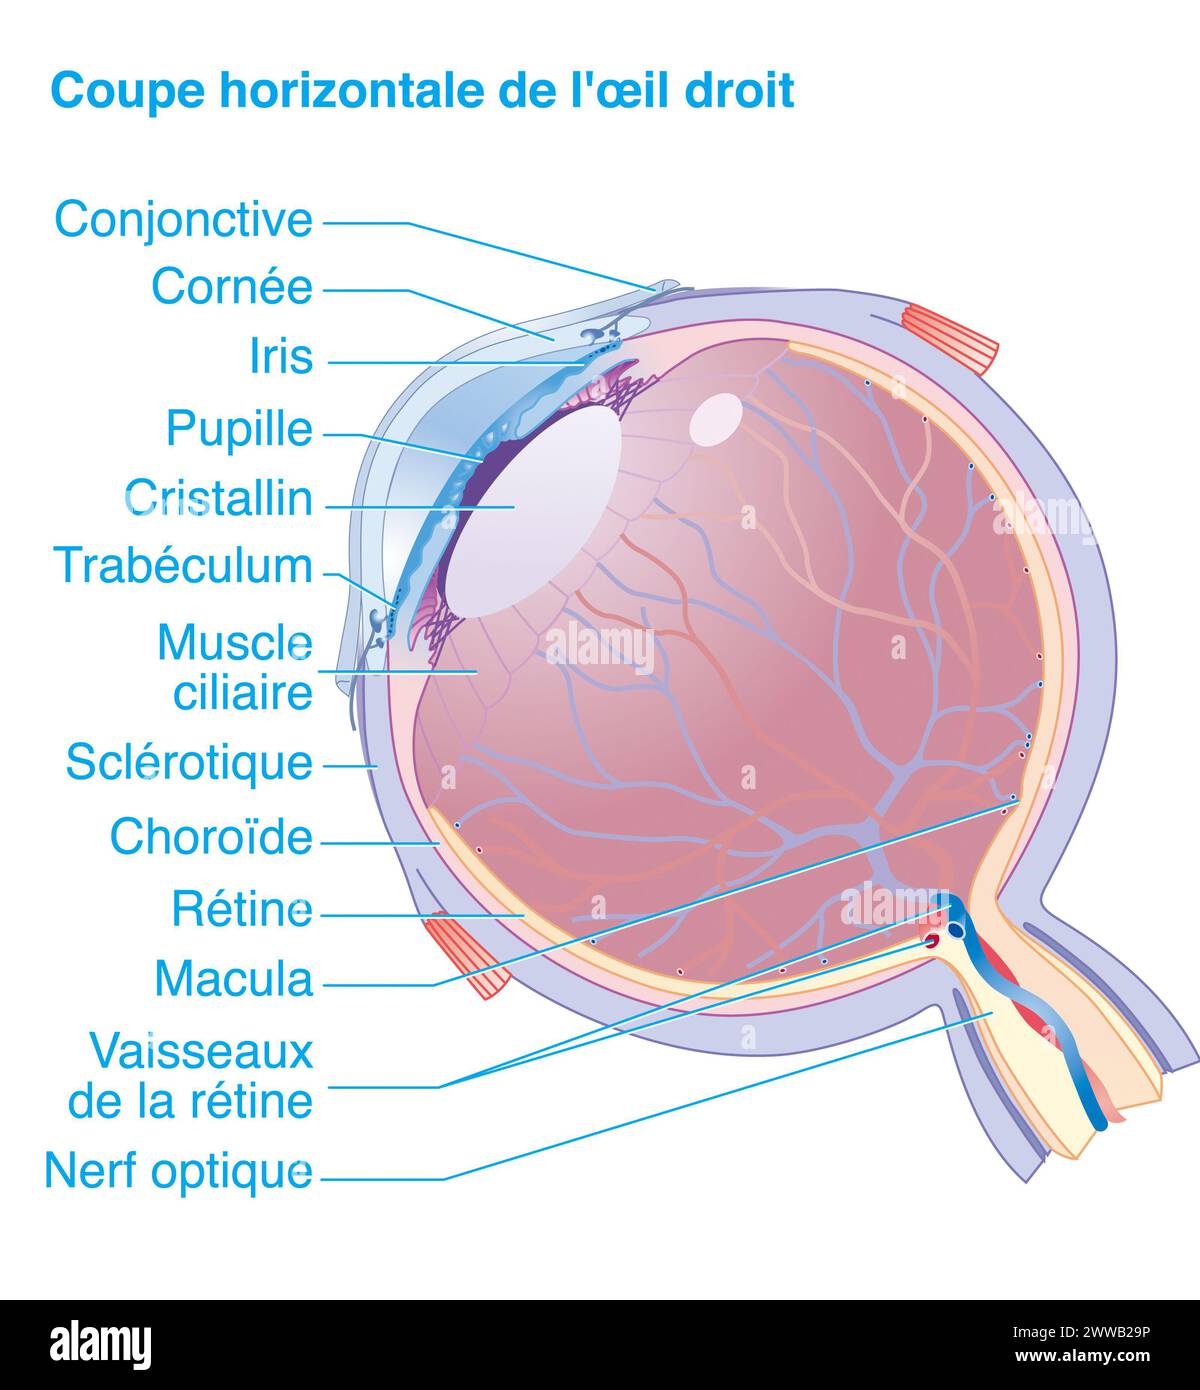 Sezione orizzontale dell'occhio destro. Anatomia dell'occhio destro, sezione orizzontale che mostra tutte le principali strutture dell'occhio. Foto Stock